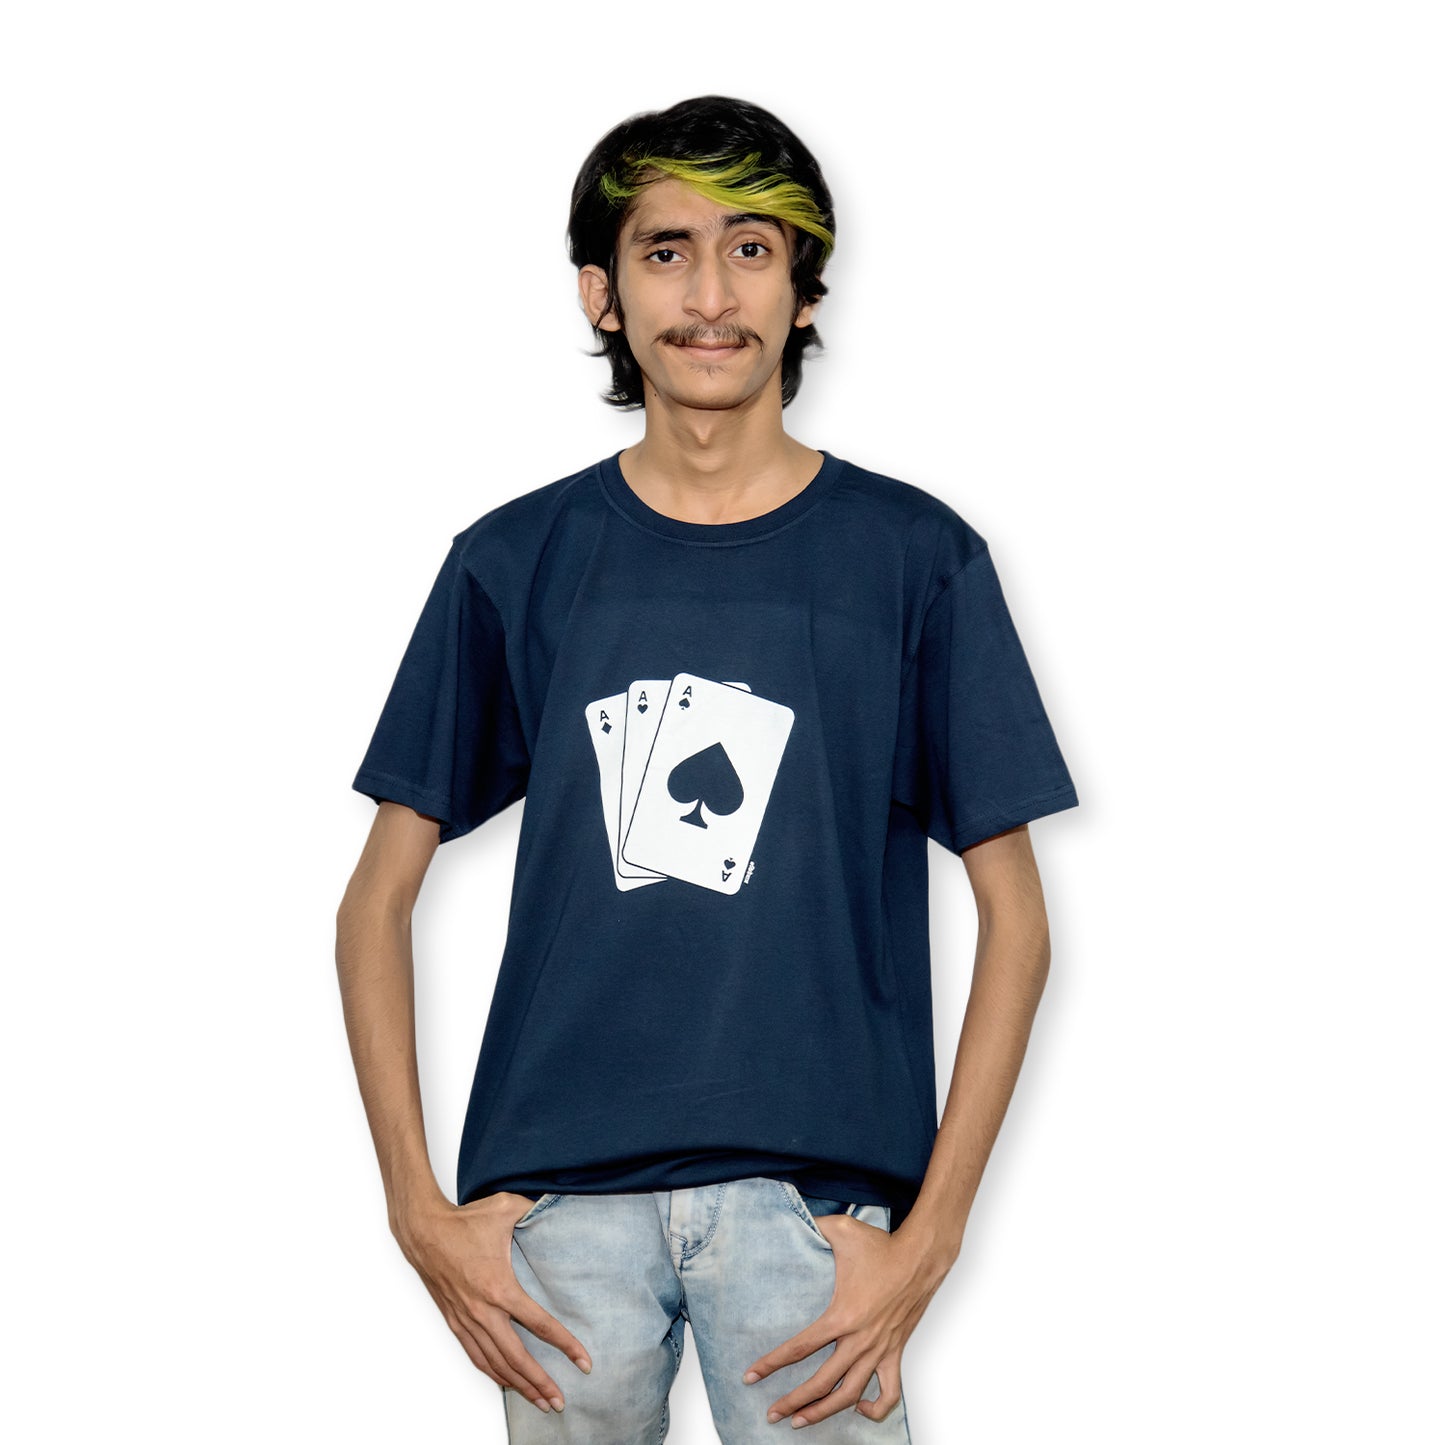 Cards T-Shirt - Kidebaj